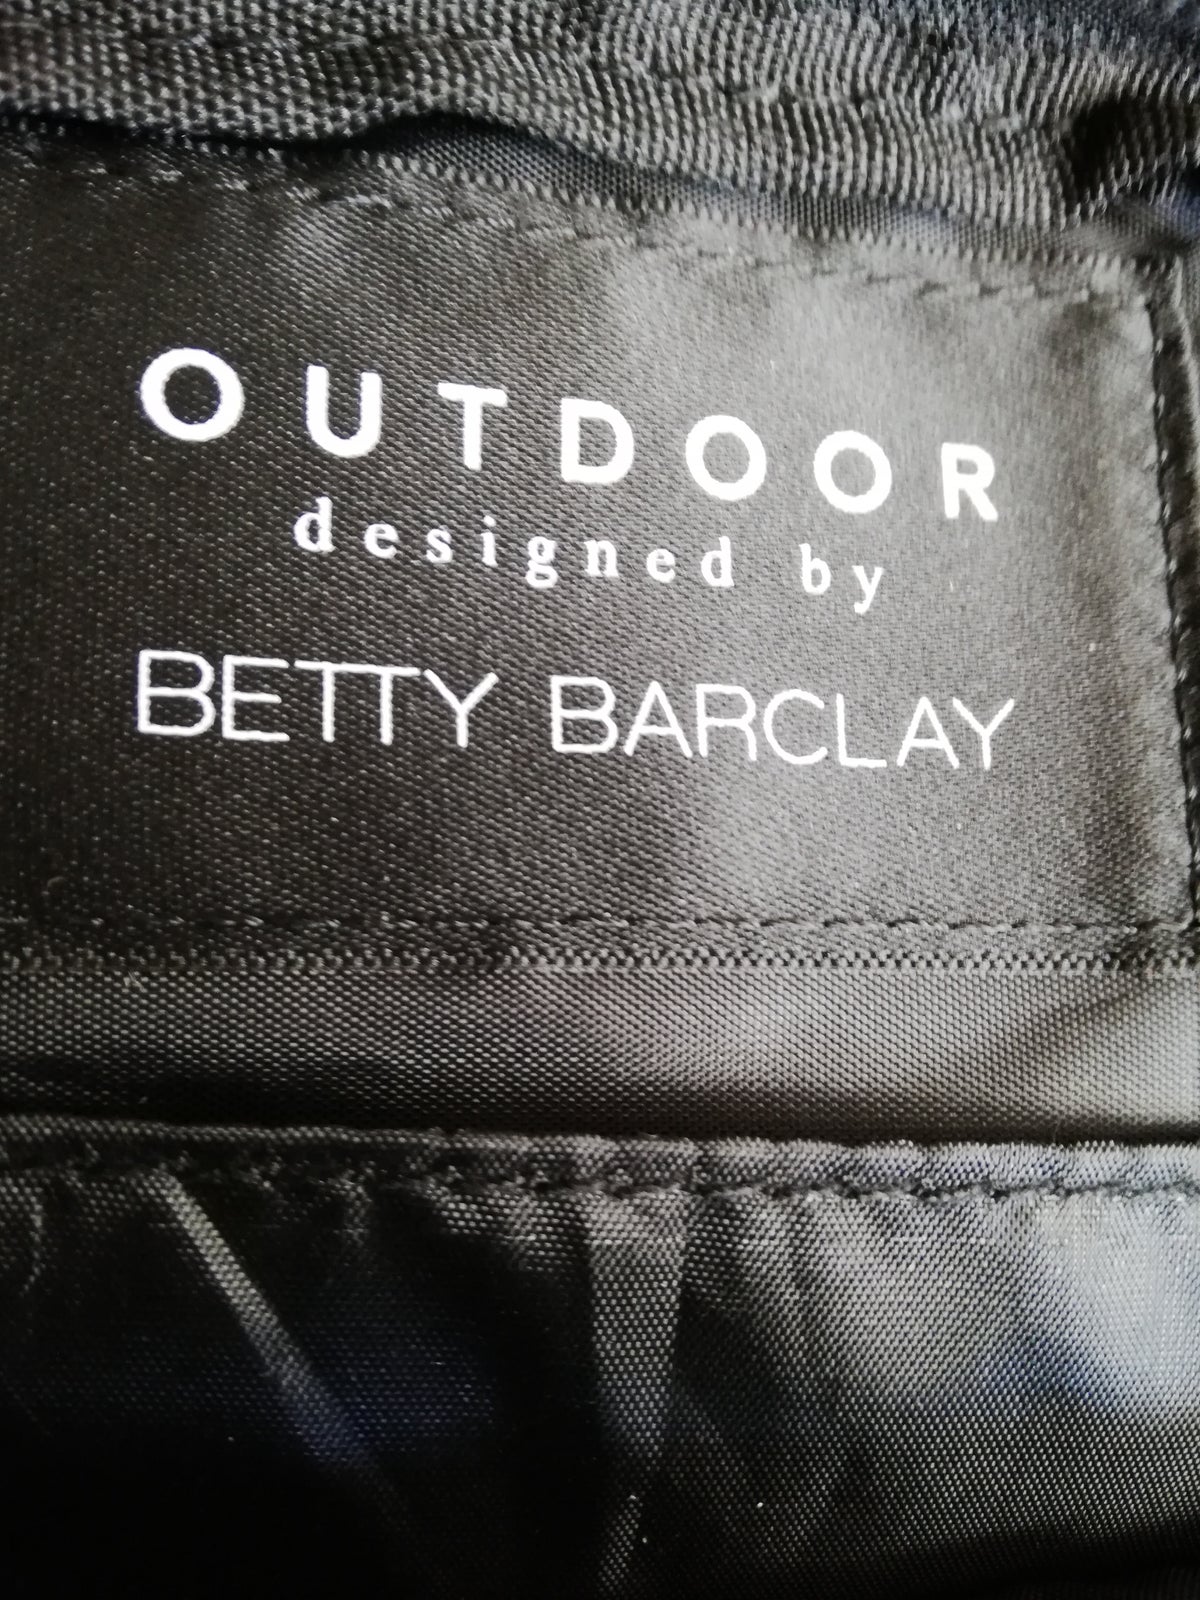 Crossbody, Betty barclay